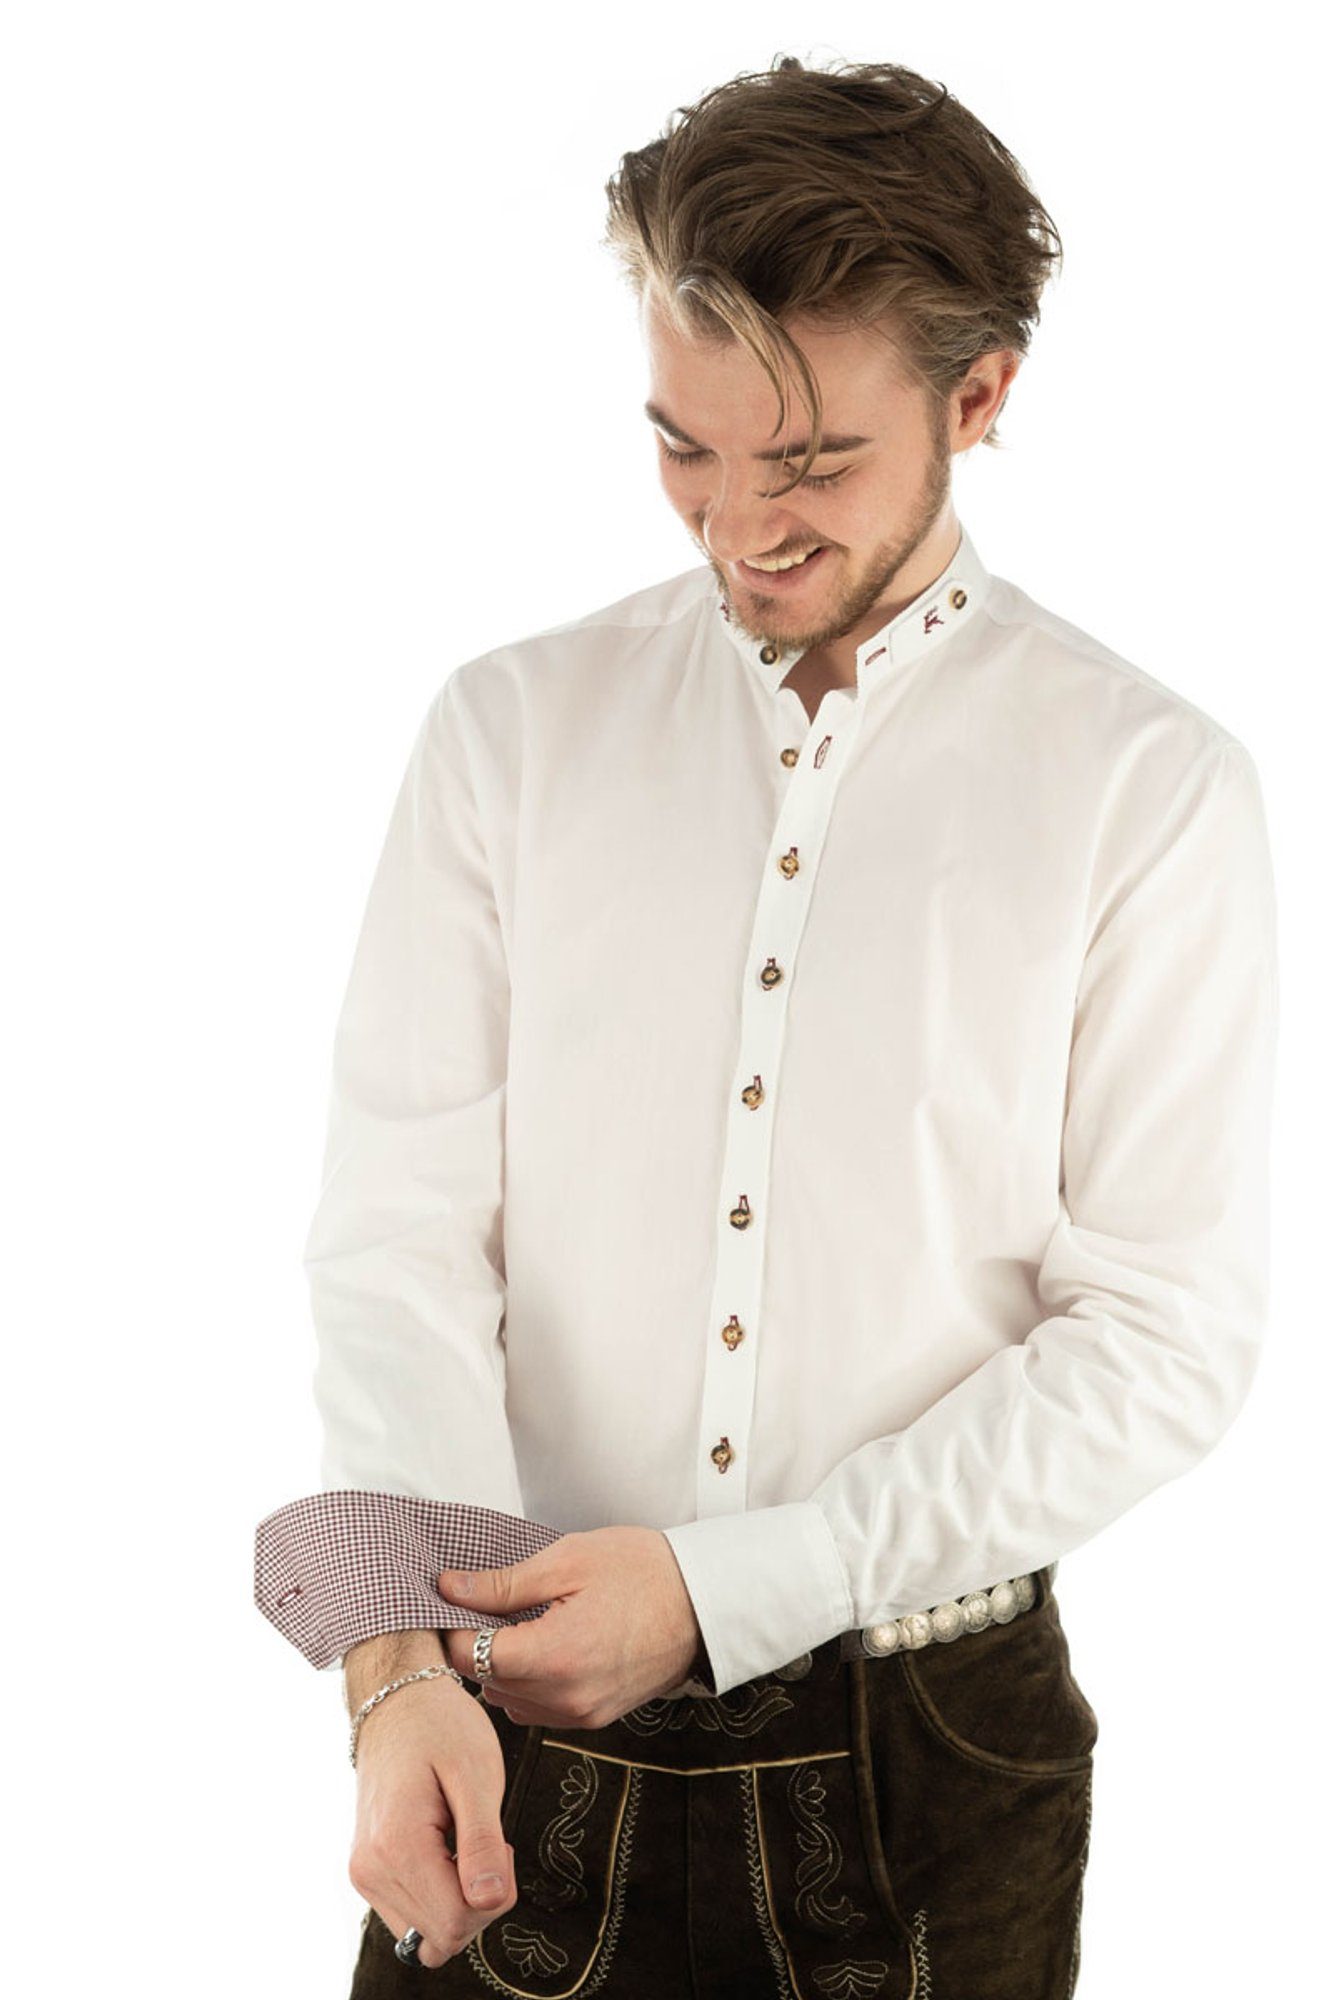 mit Omsaya besticktem weiß-weinrot Trachtenhemd Stehkragen OS-Trachten mit Langarmhemd Riegel